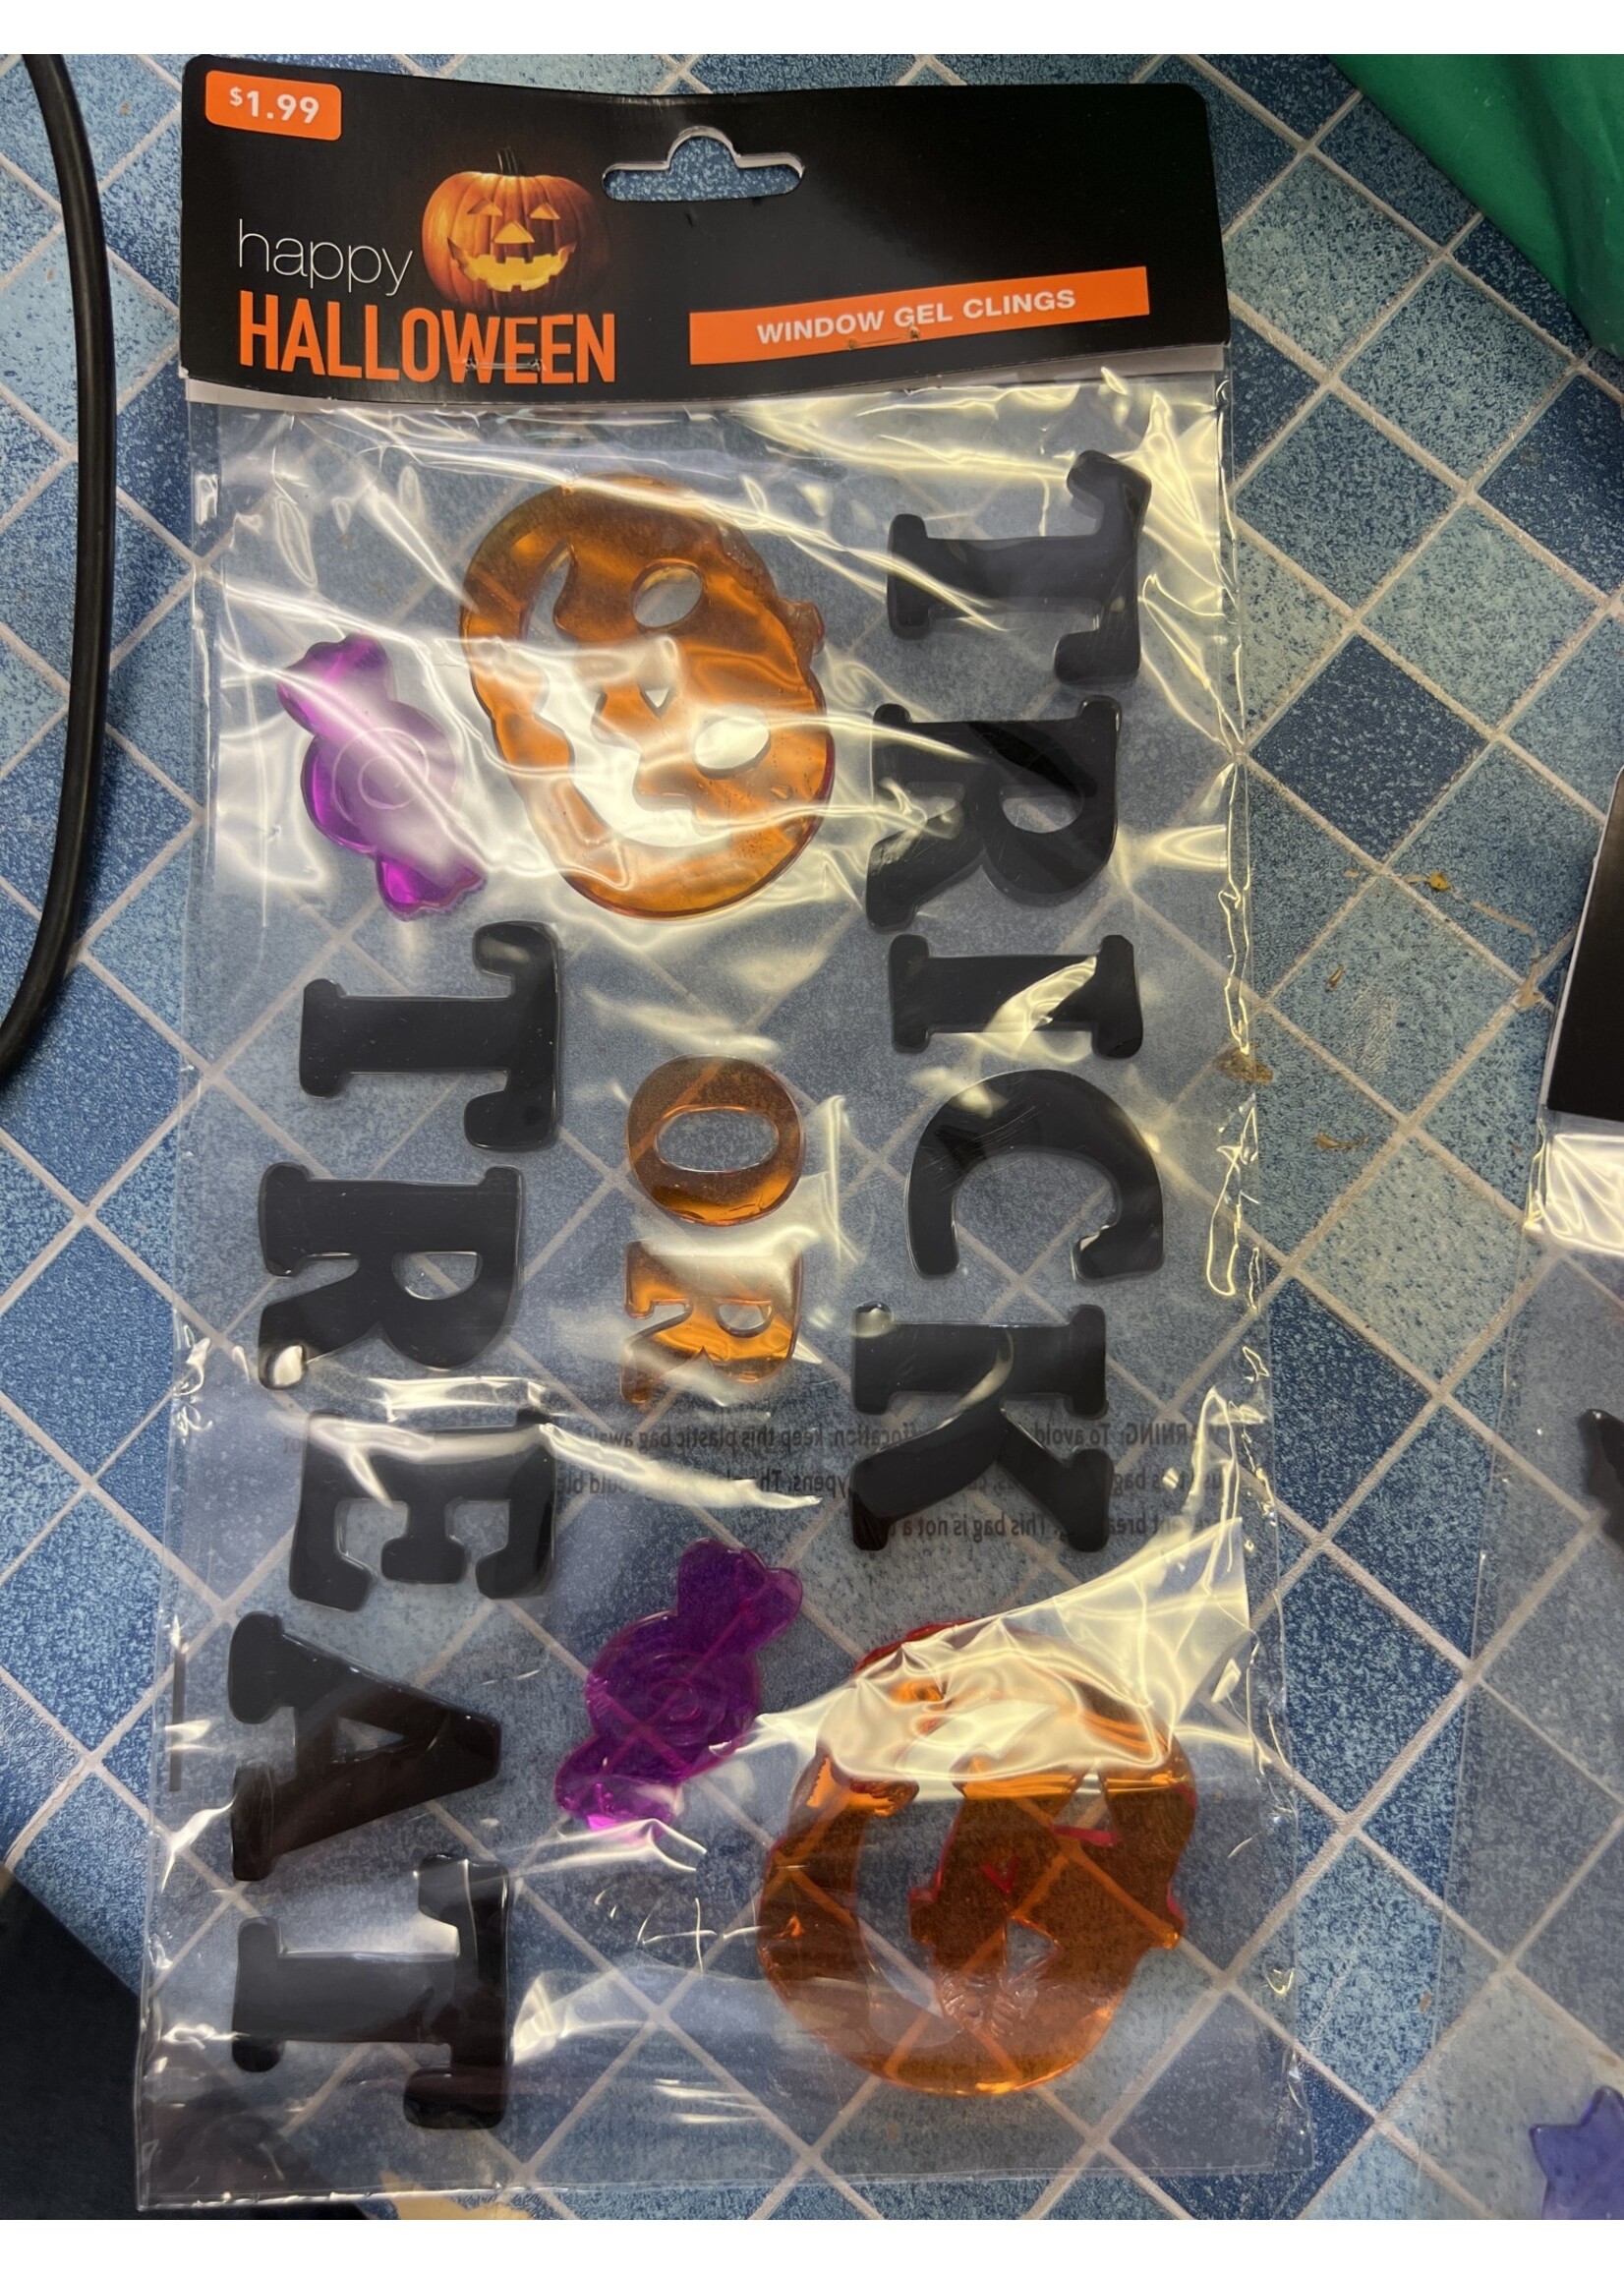 Happy Halloween- Trick or Treat window gel clings